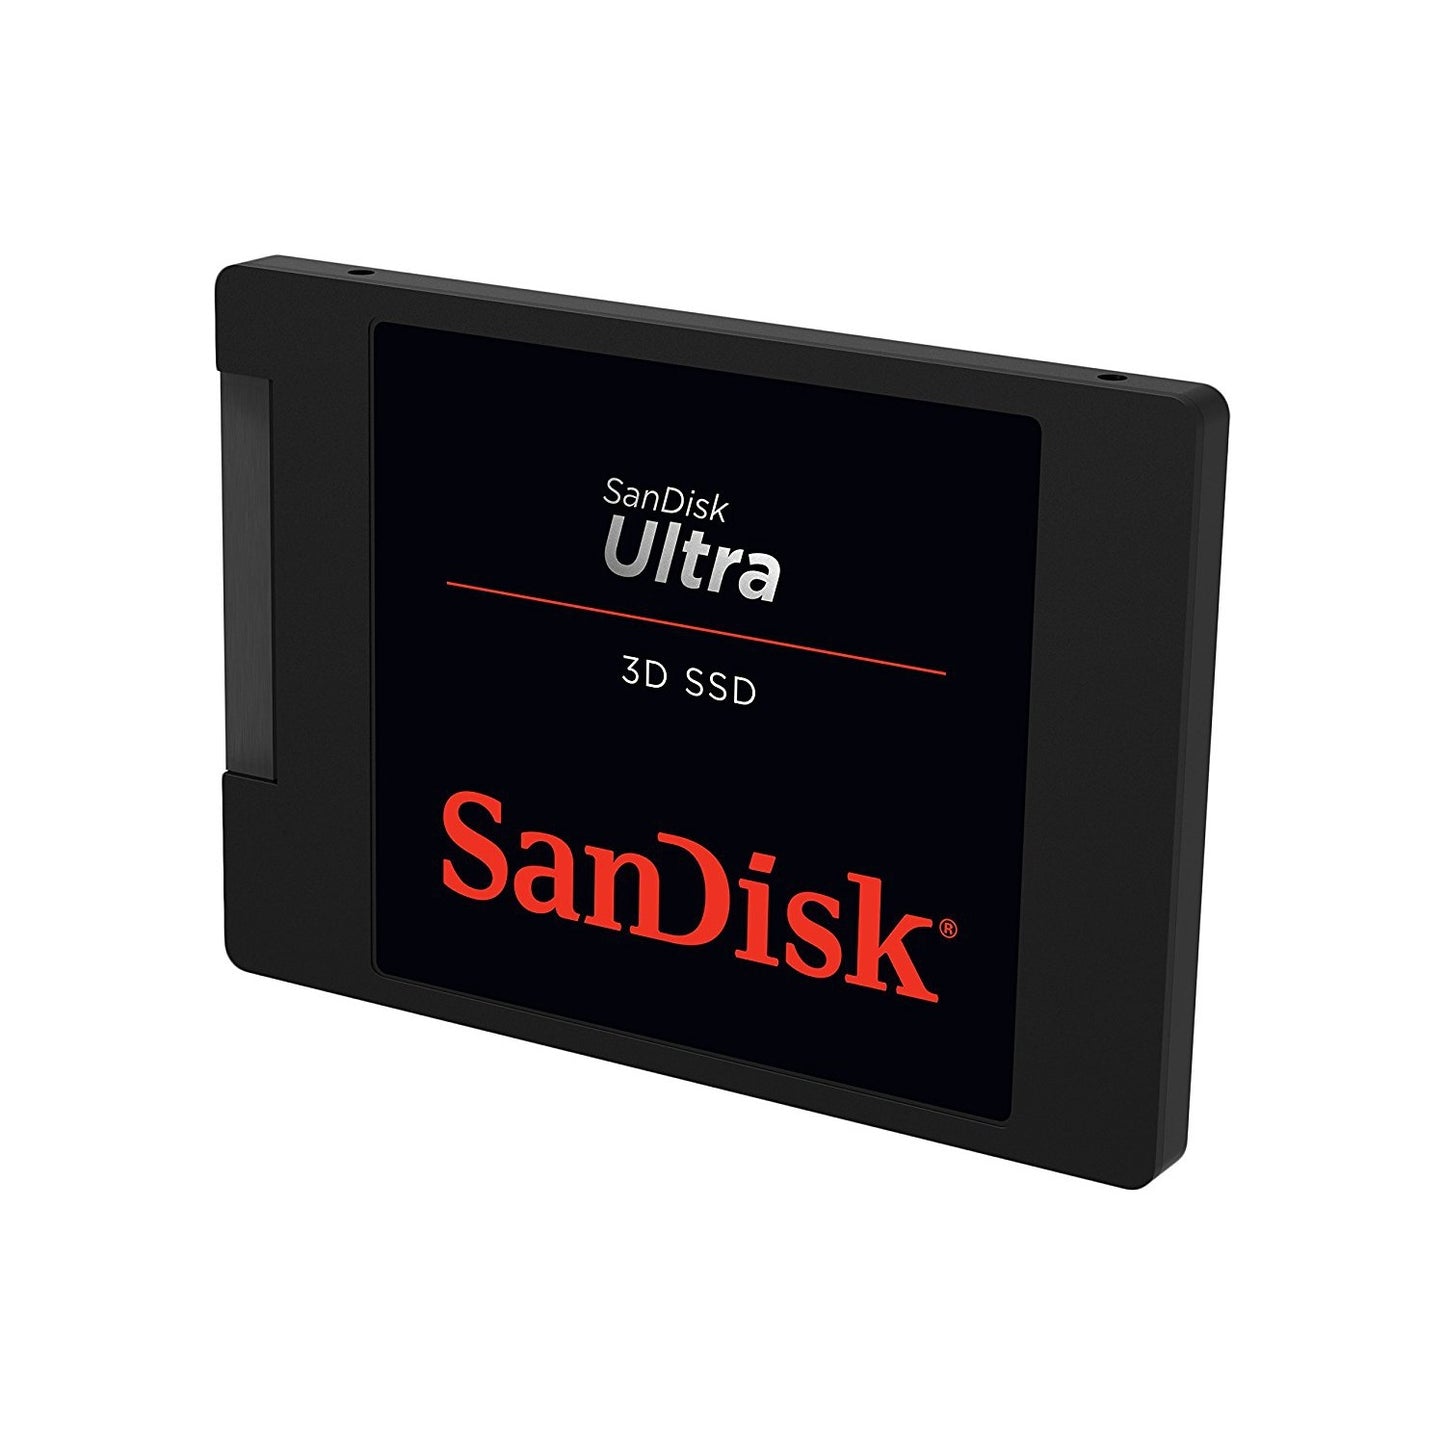 UNIDAD DE ESTADO SOLIDO SSD SANDISK ULTRA 3D 250GB 2.5 SATA3 7MM SDSSDH3-250G-G25